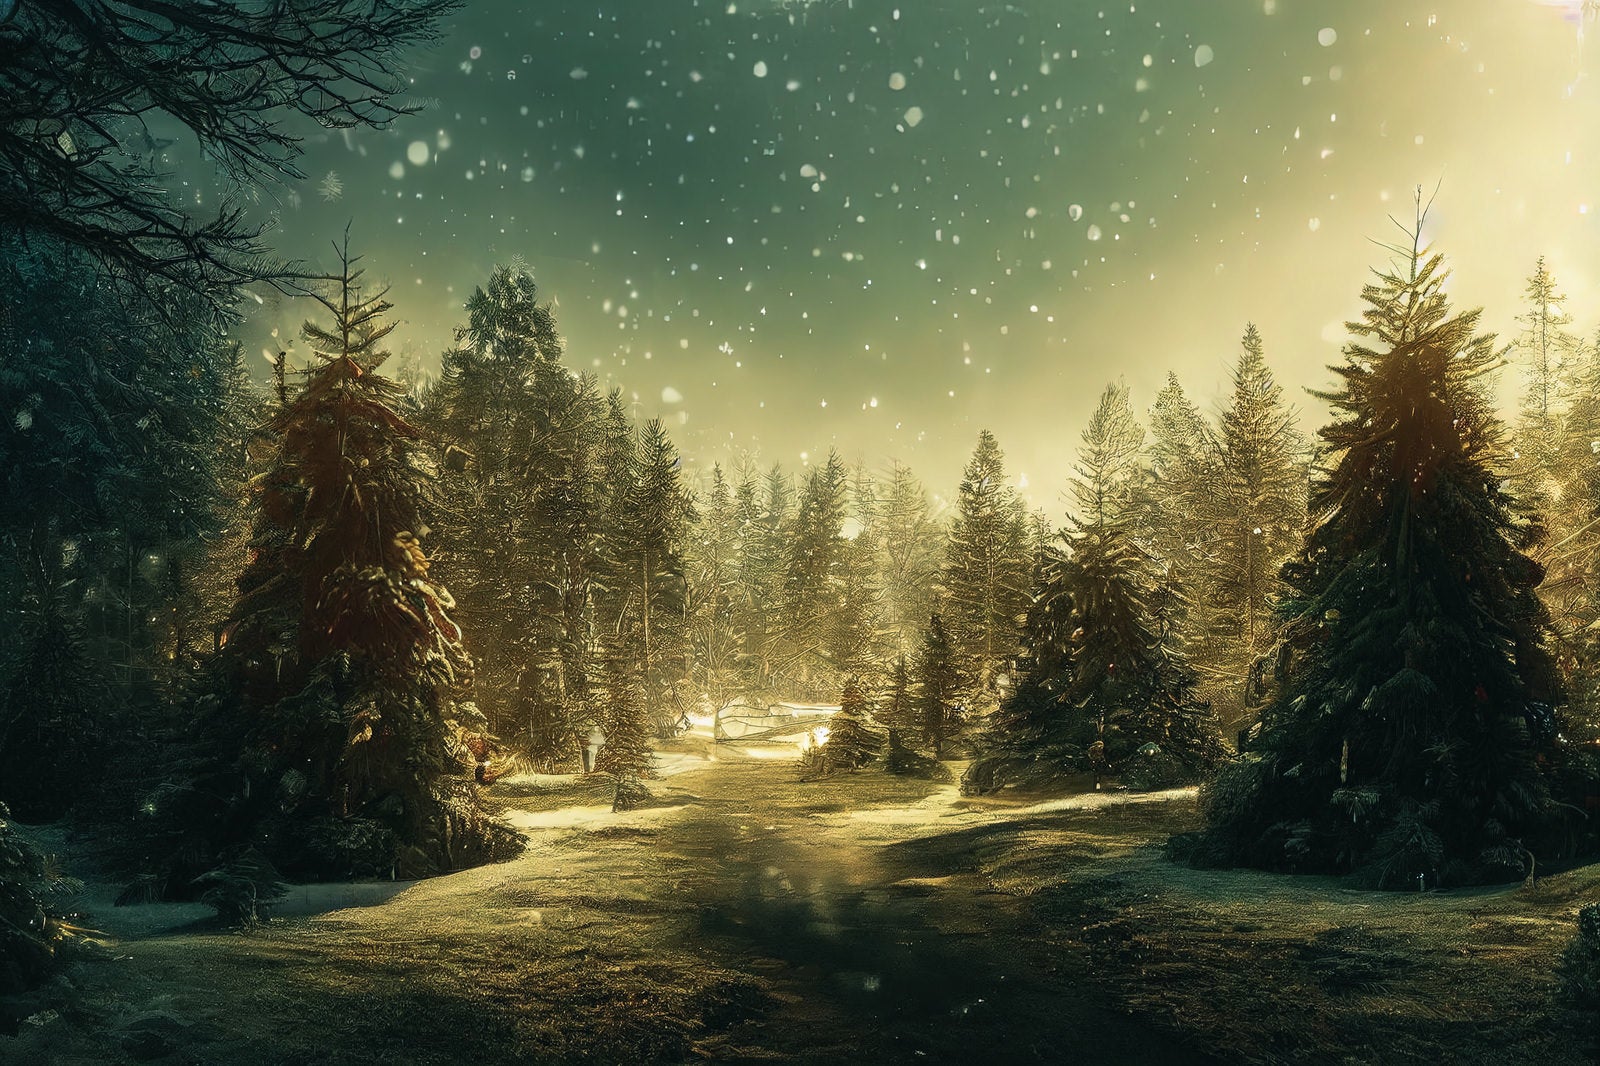 「舞い散る雪と輝くモミの木」の写真